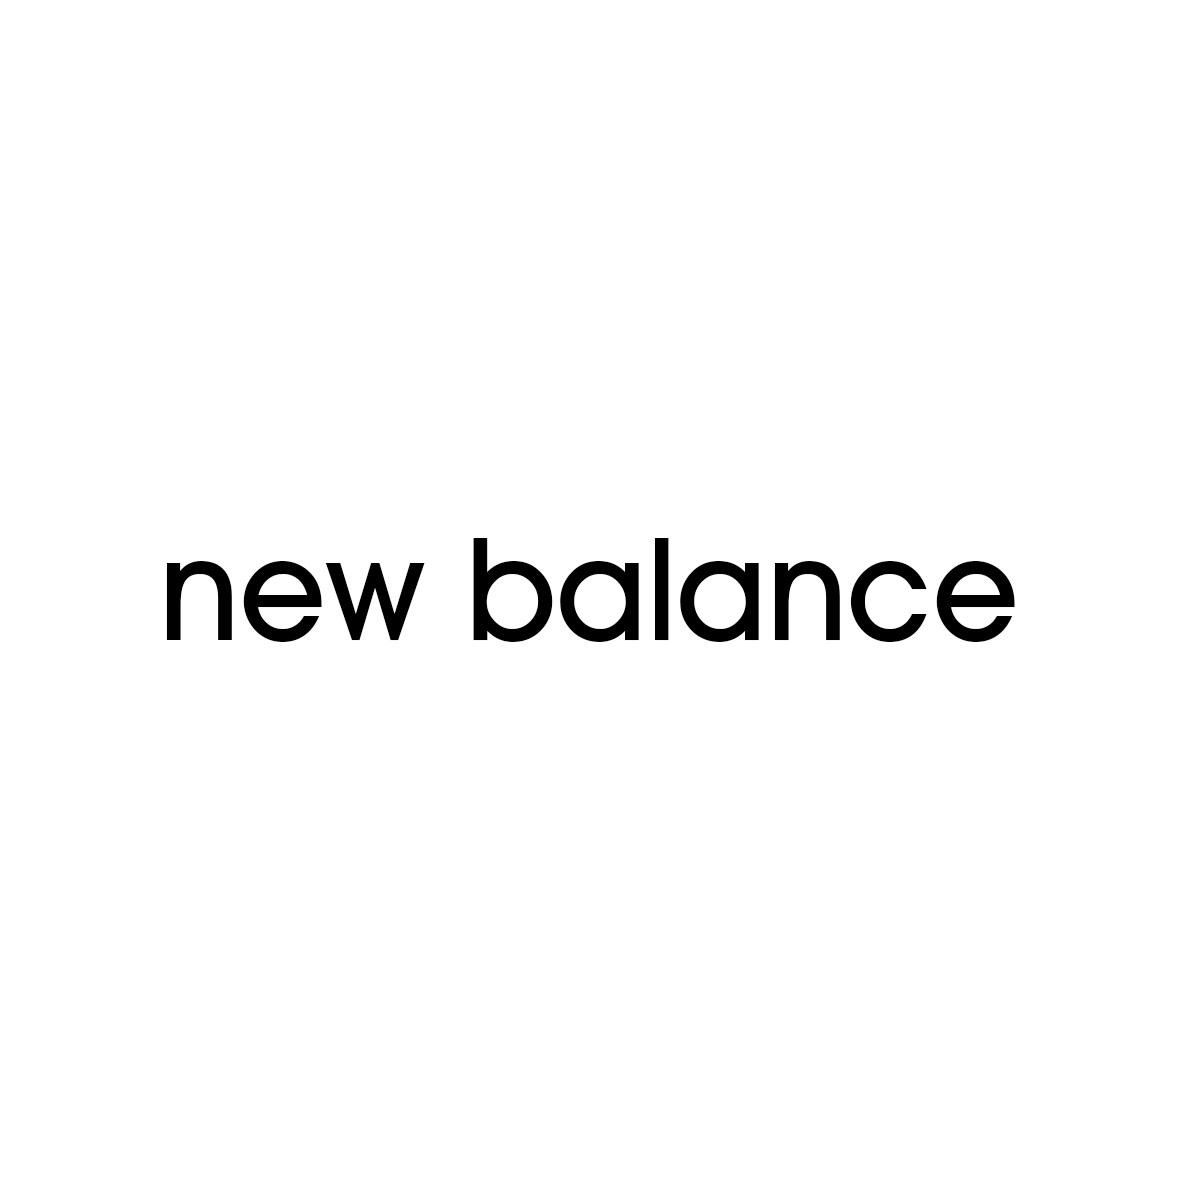 NEW BALANCE冰鞋商标转让费用买卖交易流程